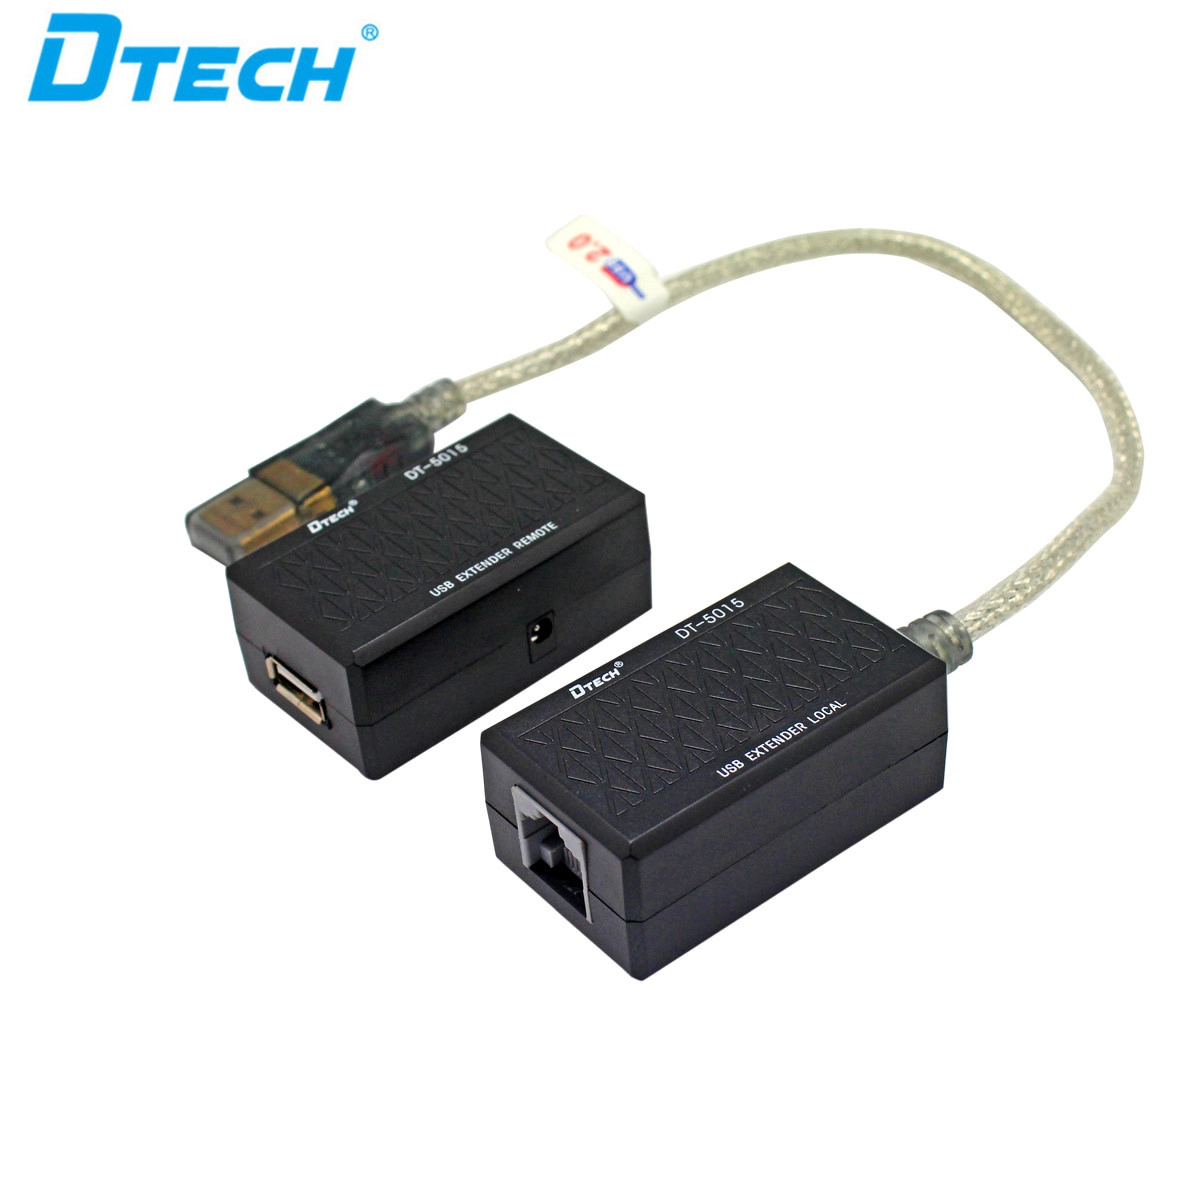 Extensor DTECH DT-5015 USB 60M por cable lan